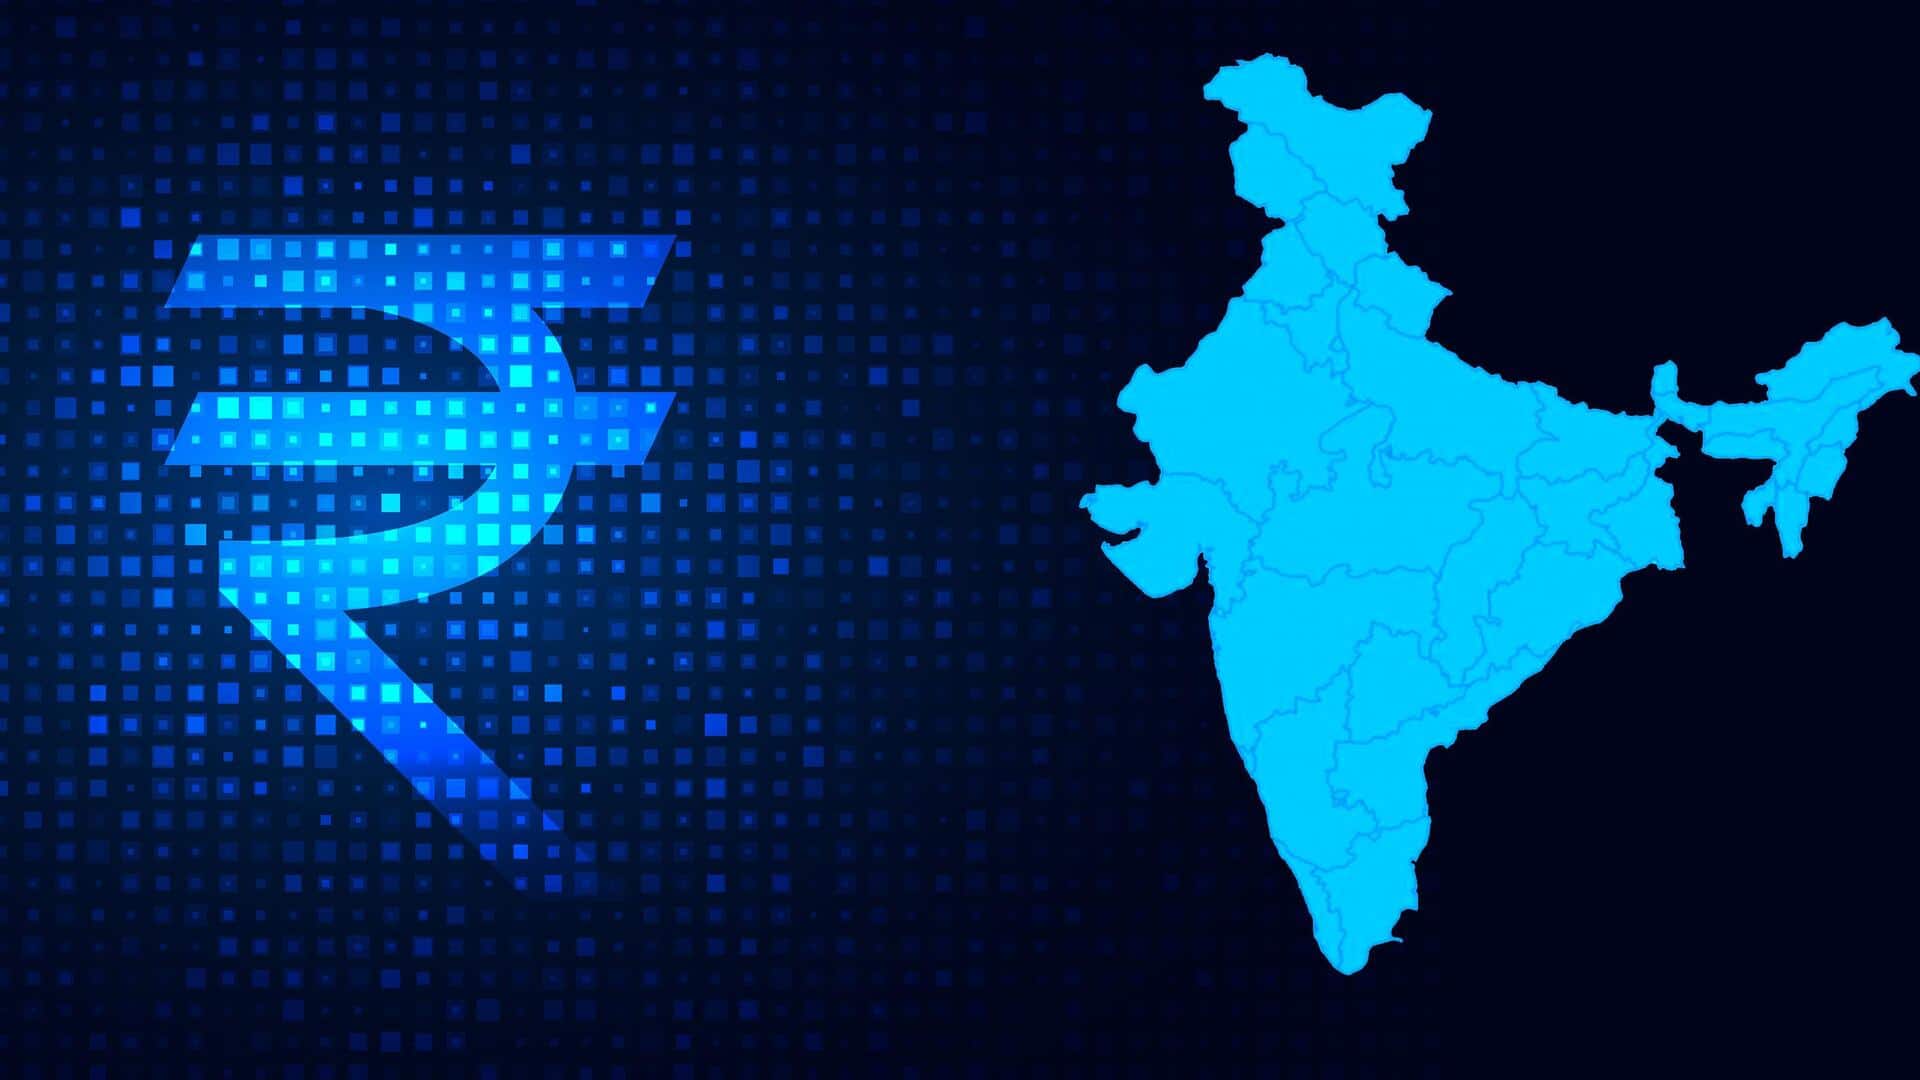 उत्तर प्रदेश और गुजरात समेत 5 राज्यों को मिले आधे से अधिक नए निवेश प्रस्ताव- RBI